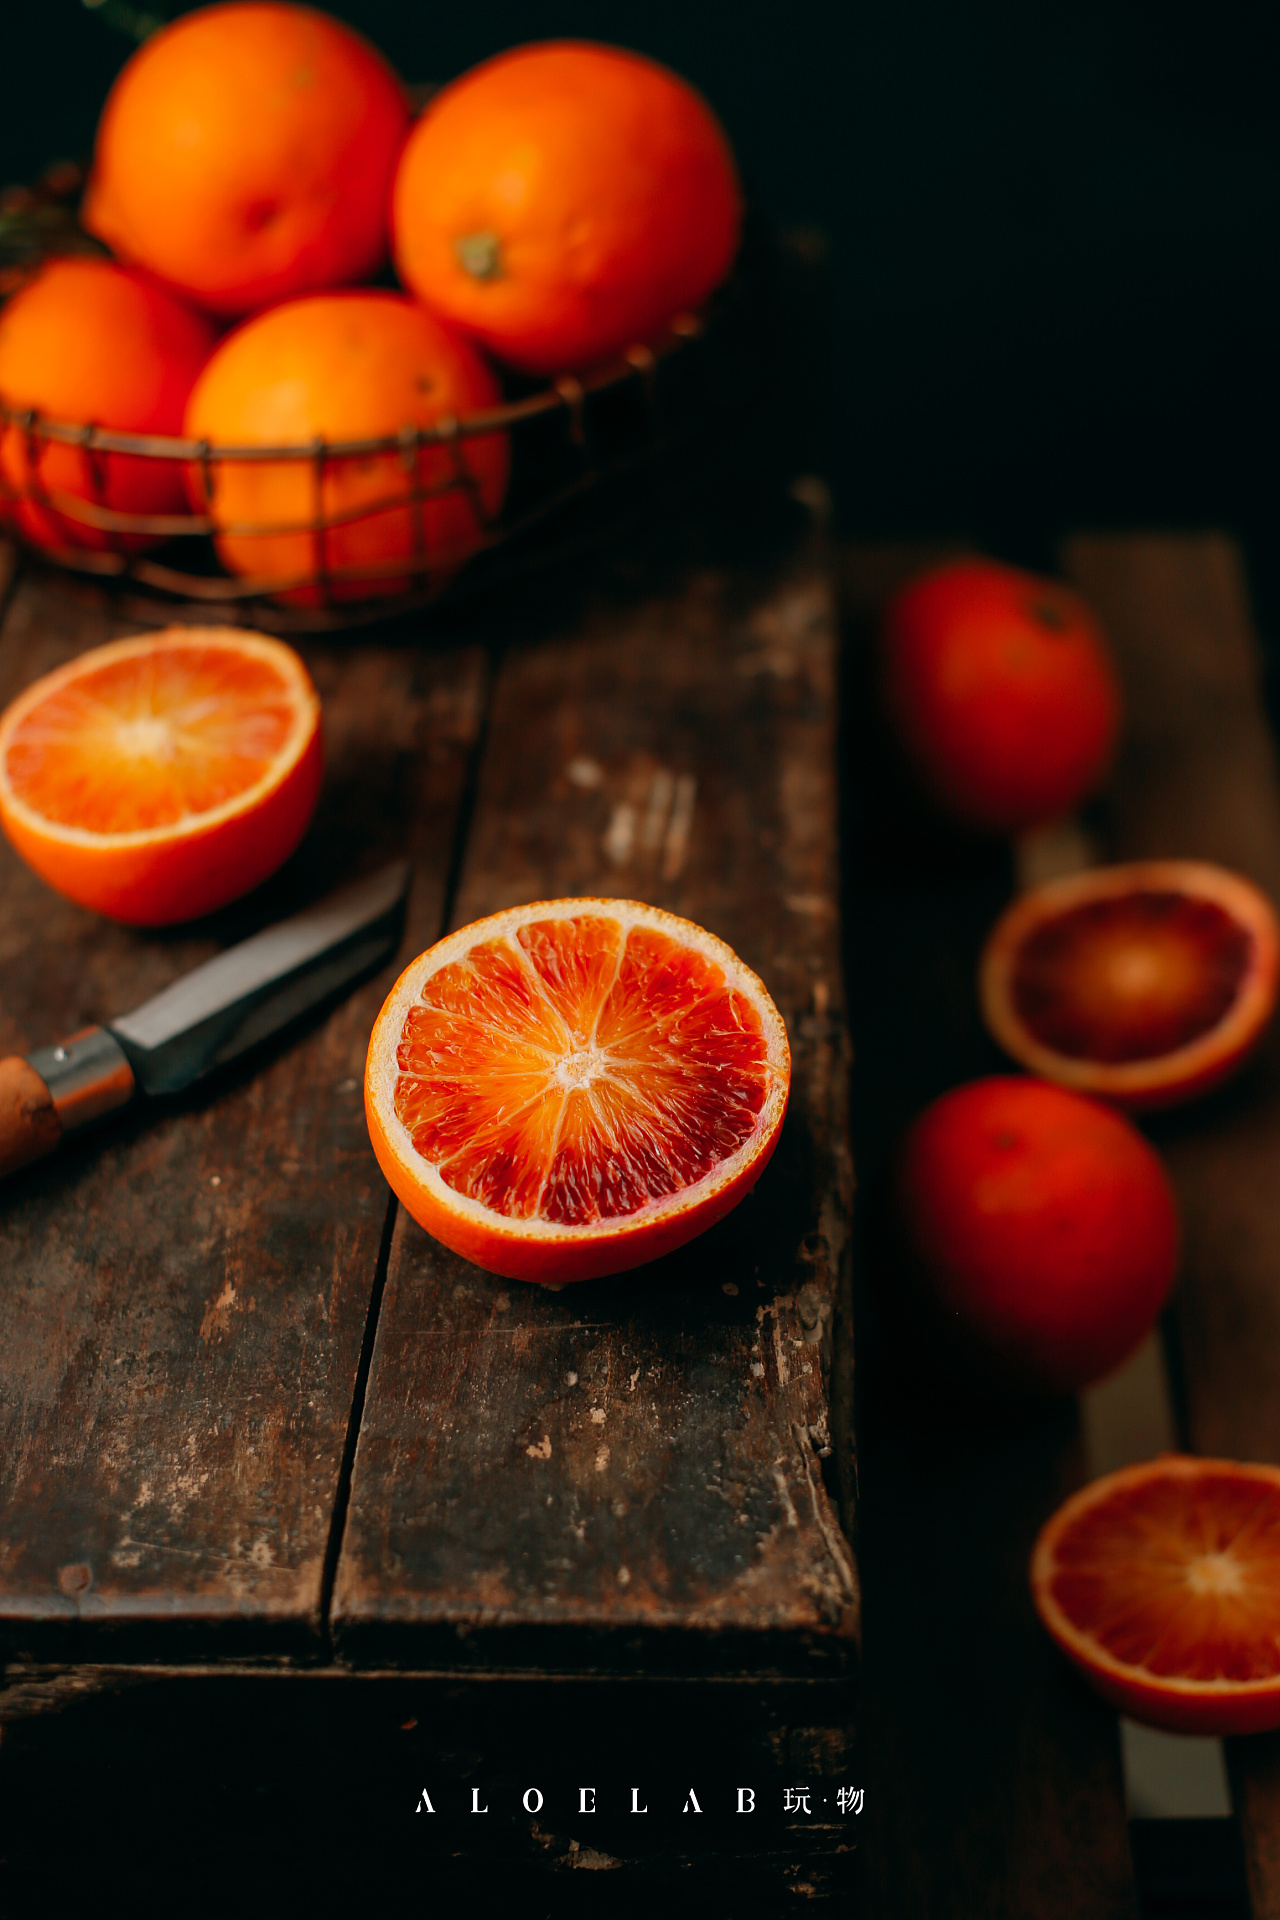 意大利血橙今年首度进入中国市场 瞄准高端市场 | 国际果蔬报道